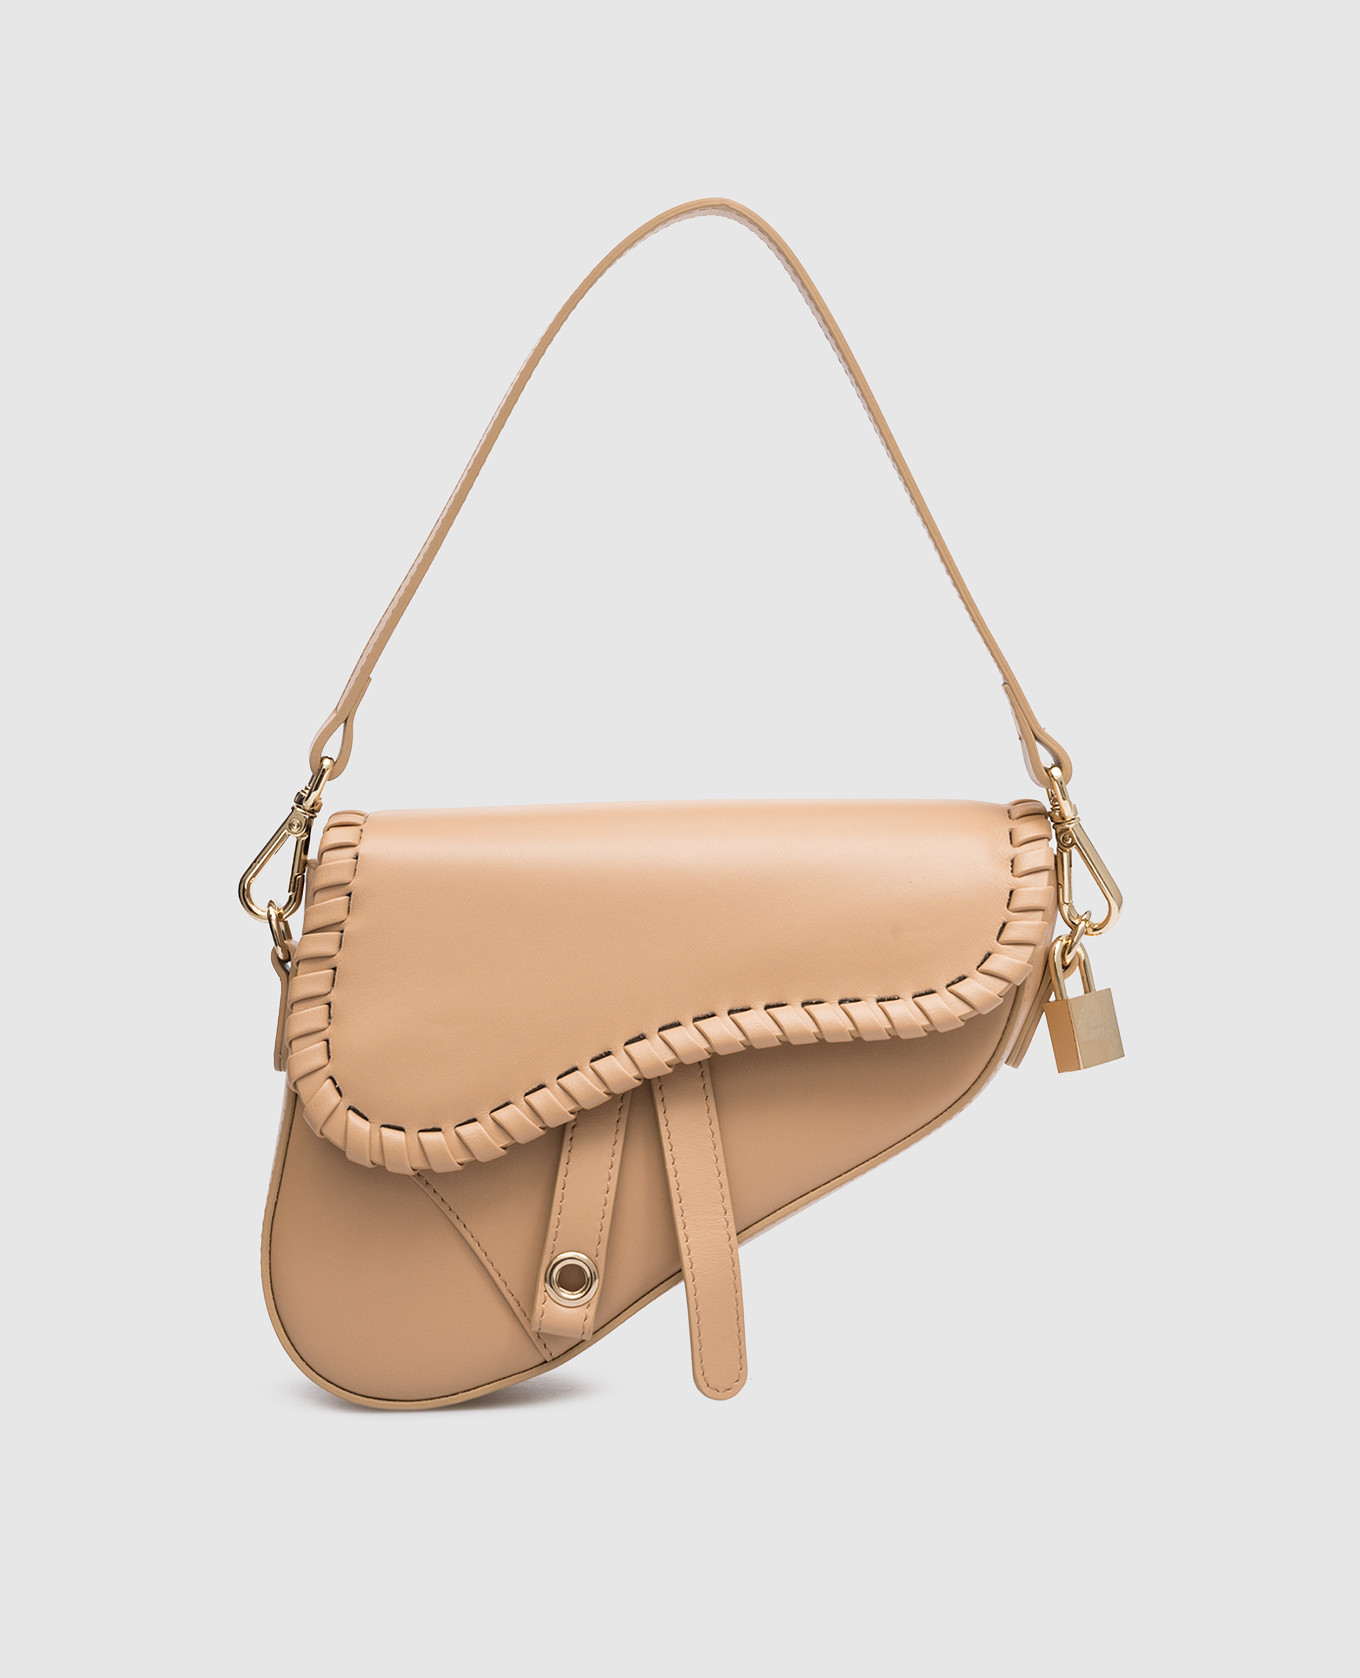 Brown leather saddle bag